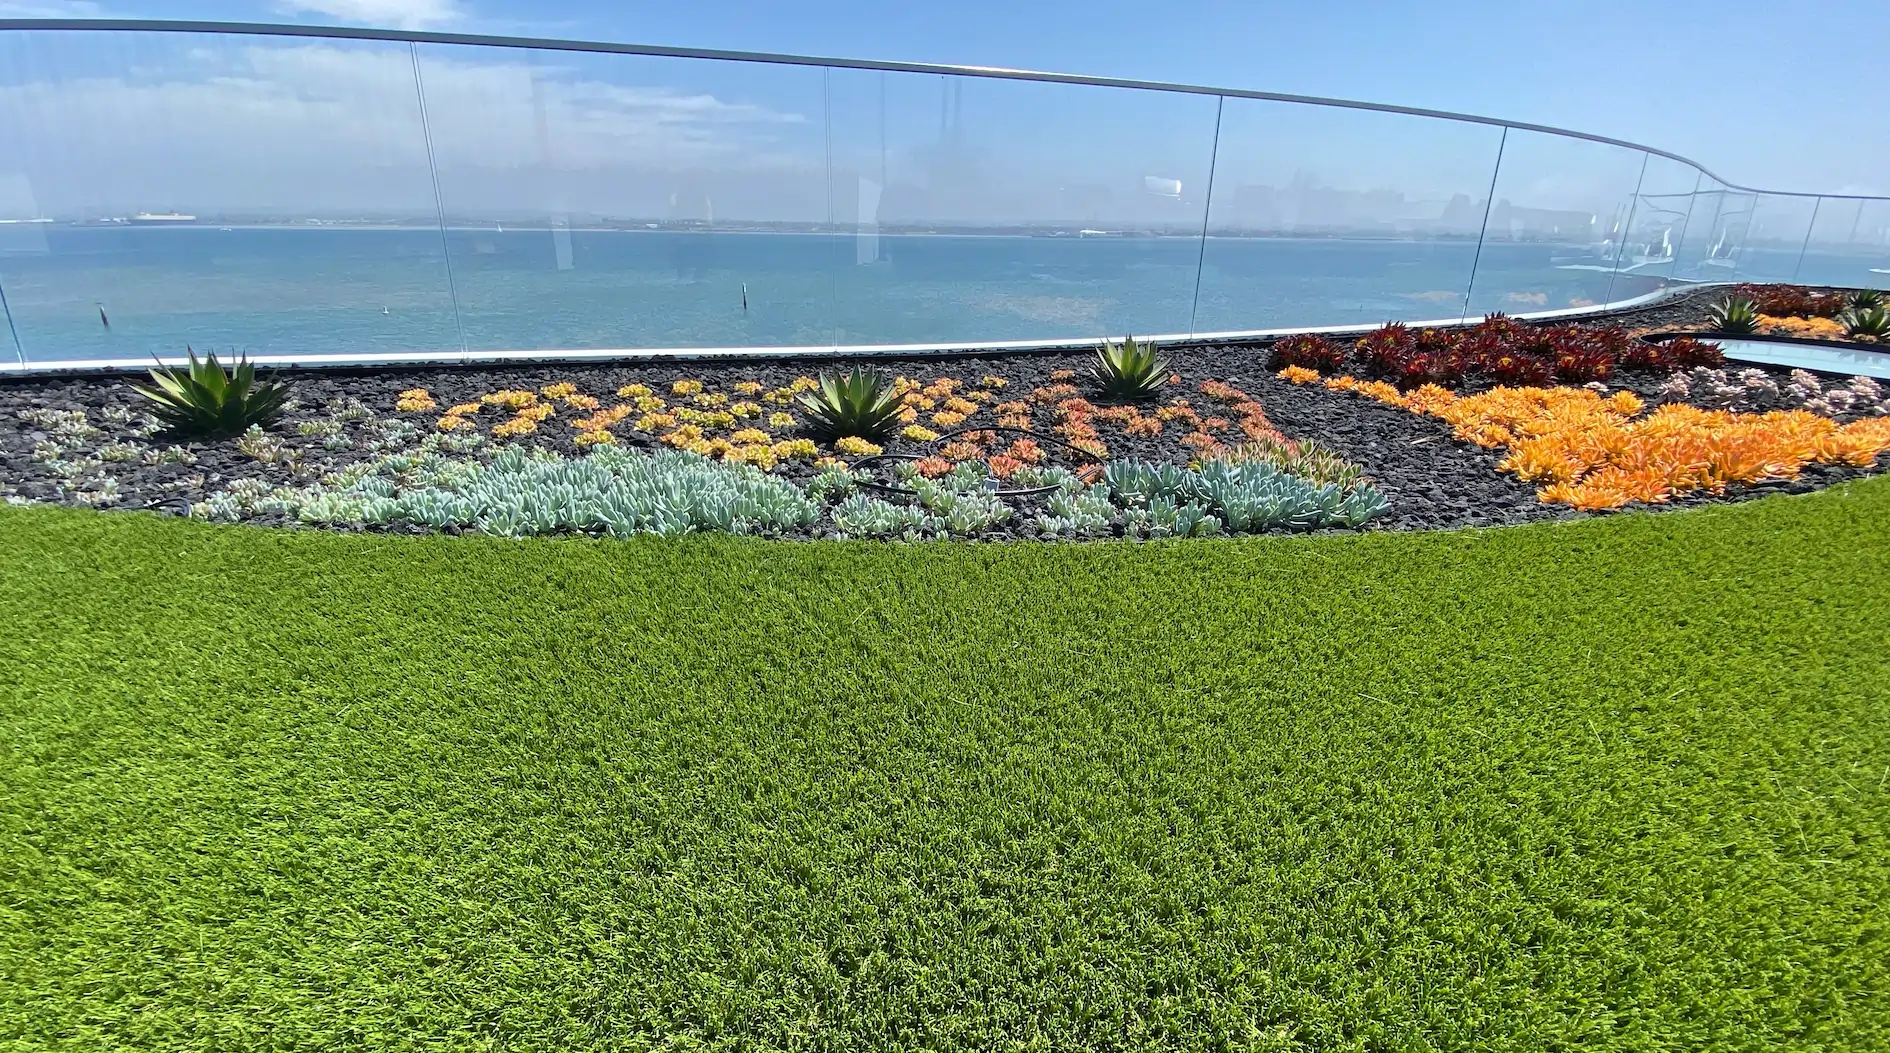 artificial grass installation near the ocean